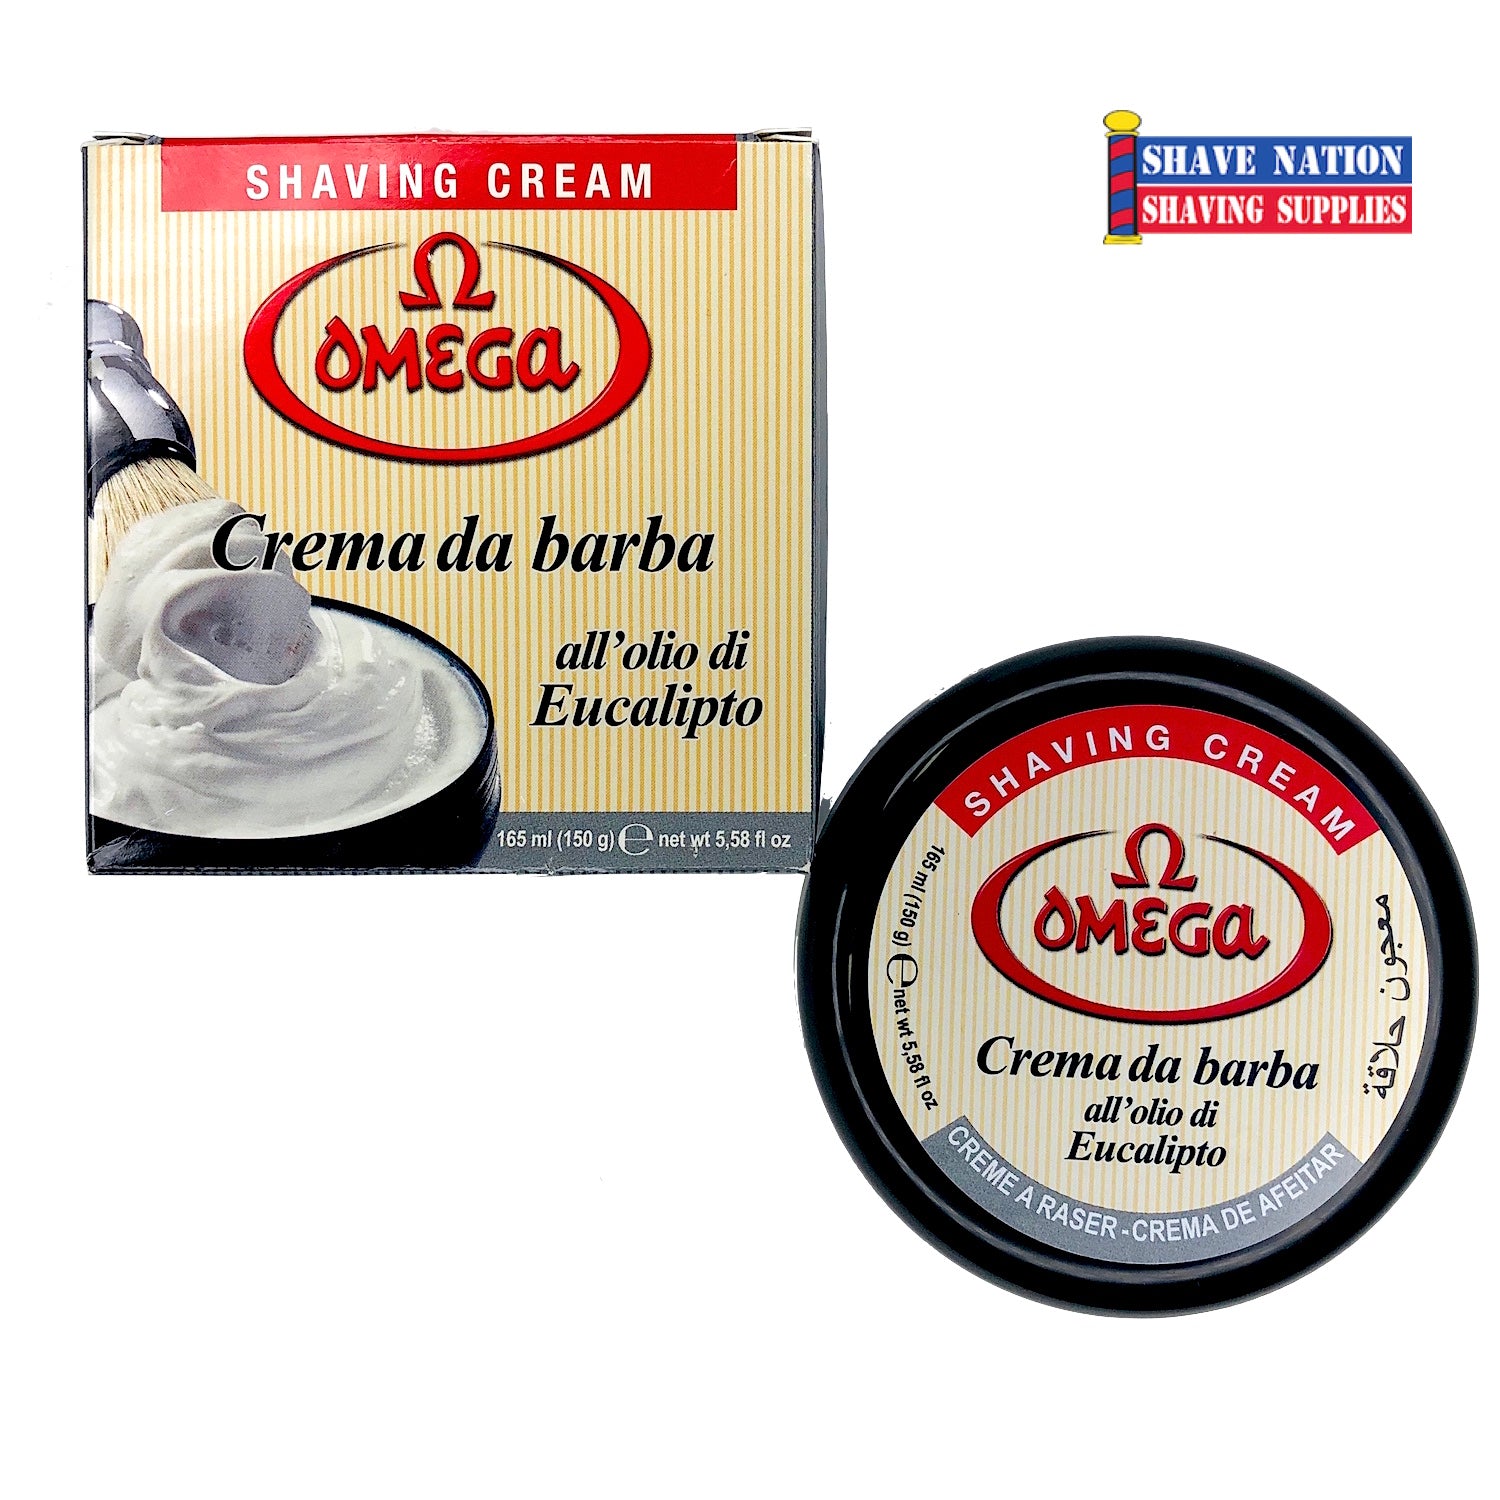 Omega Shaving Cream in Jar